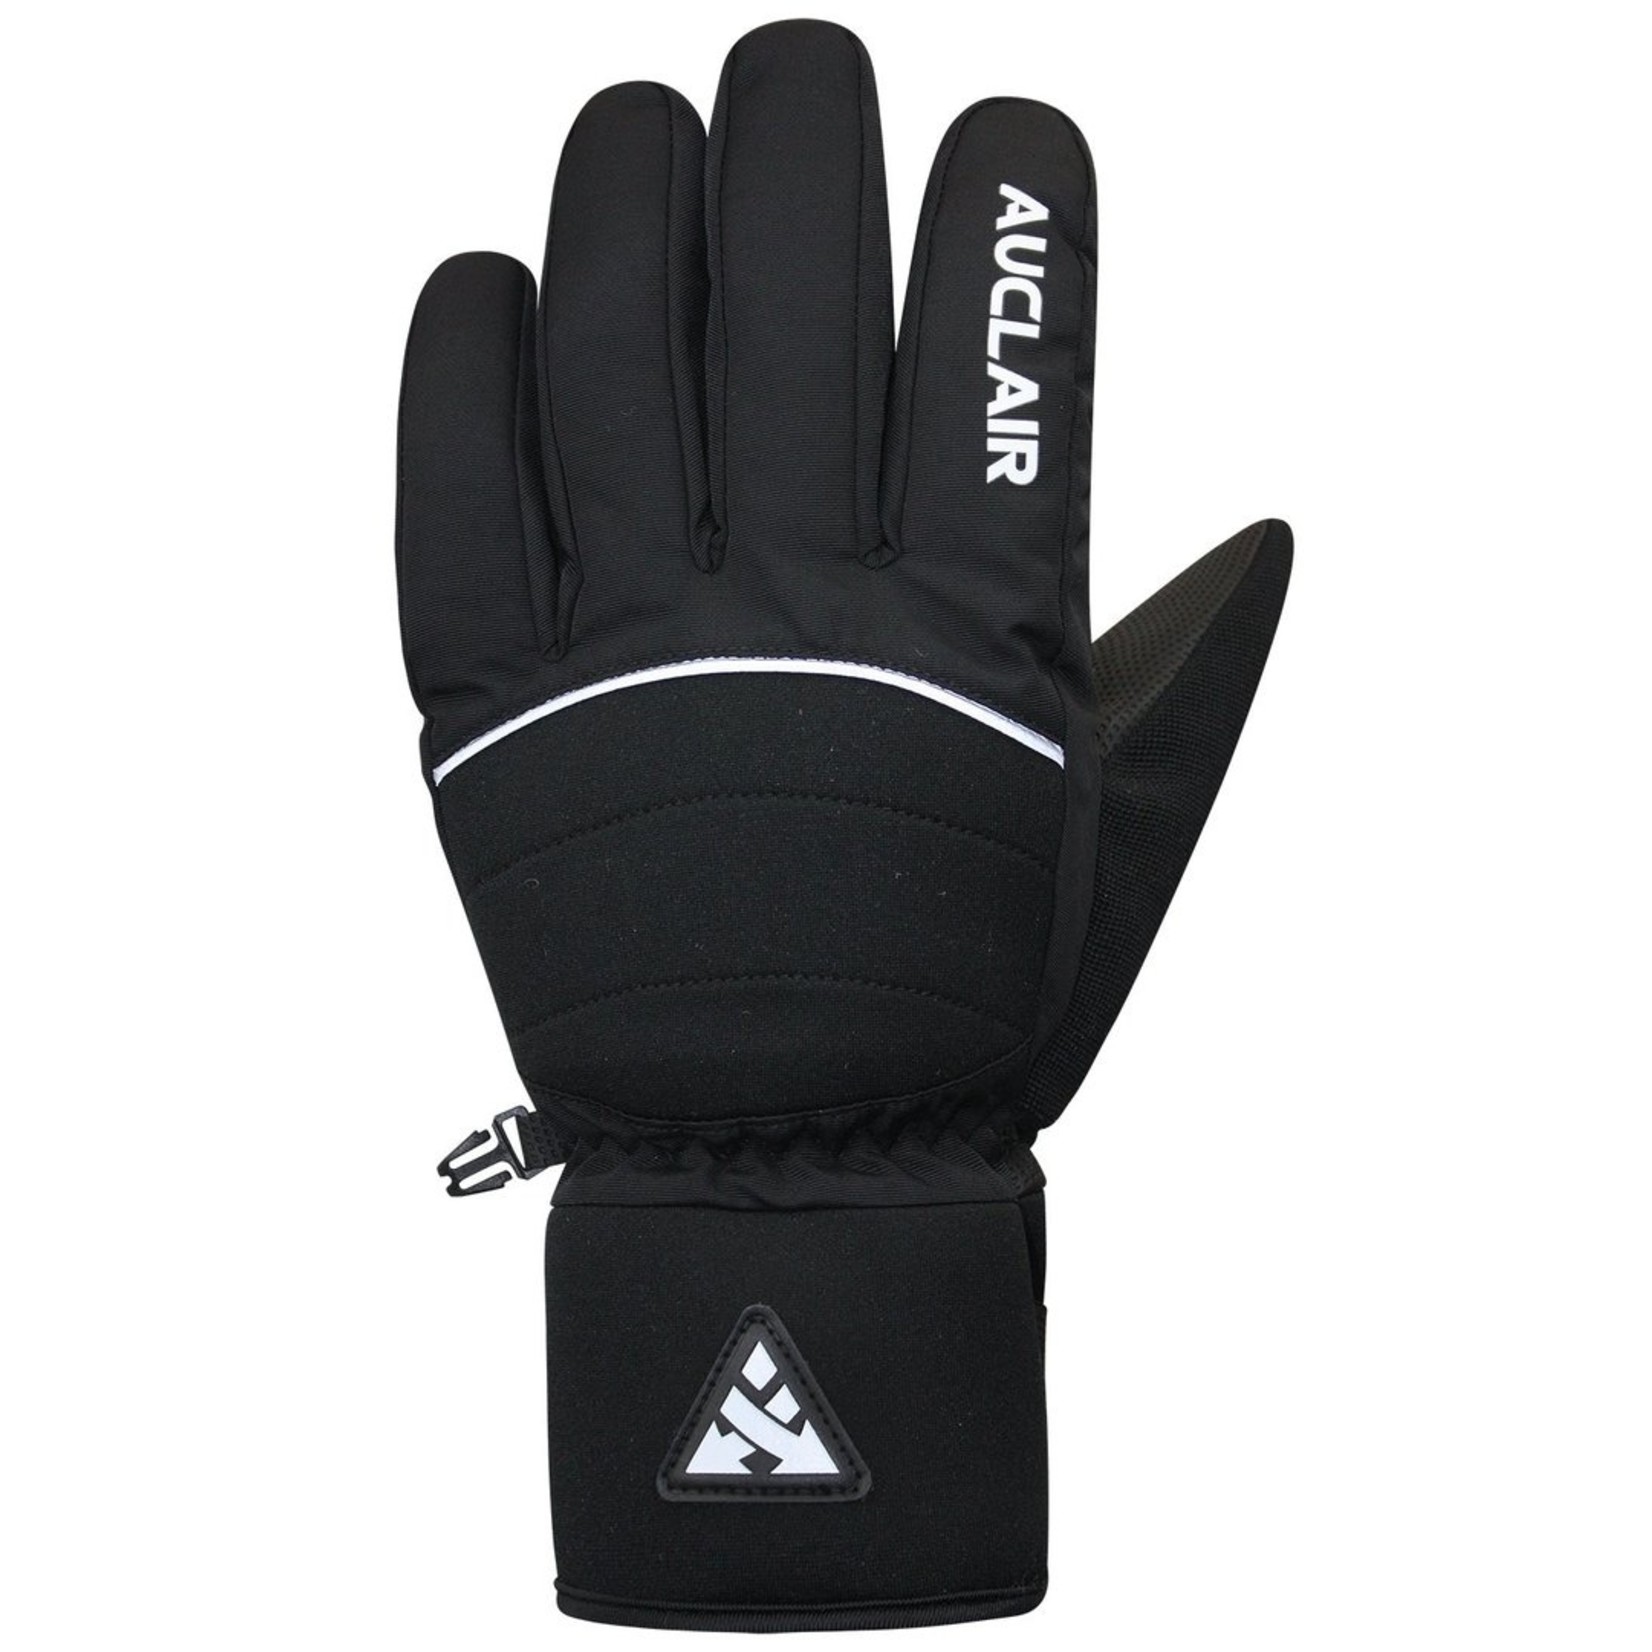 Auclair Auclair Parabolic Glove